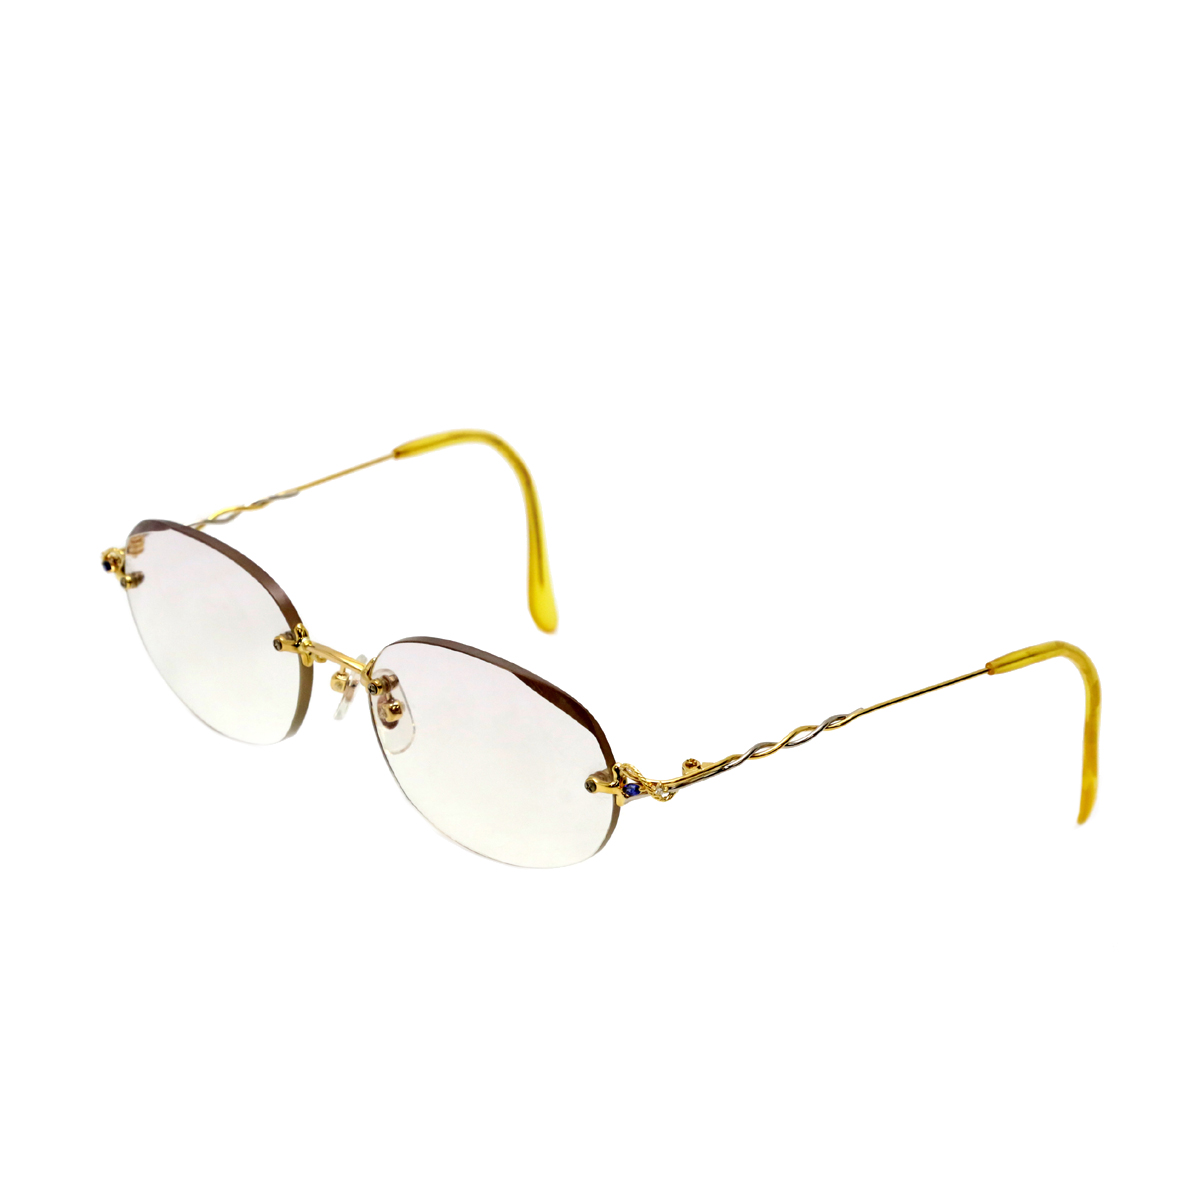 上品なスタイル Paris miki k18刻印 フレーム 眼鏡 メガネ・老眼鏡 ...